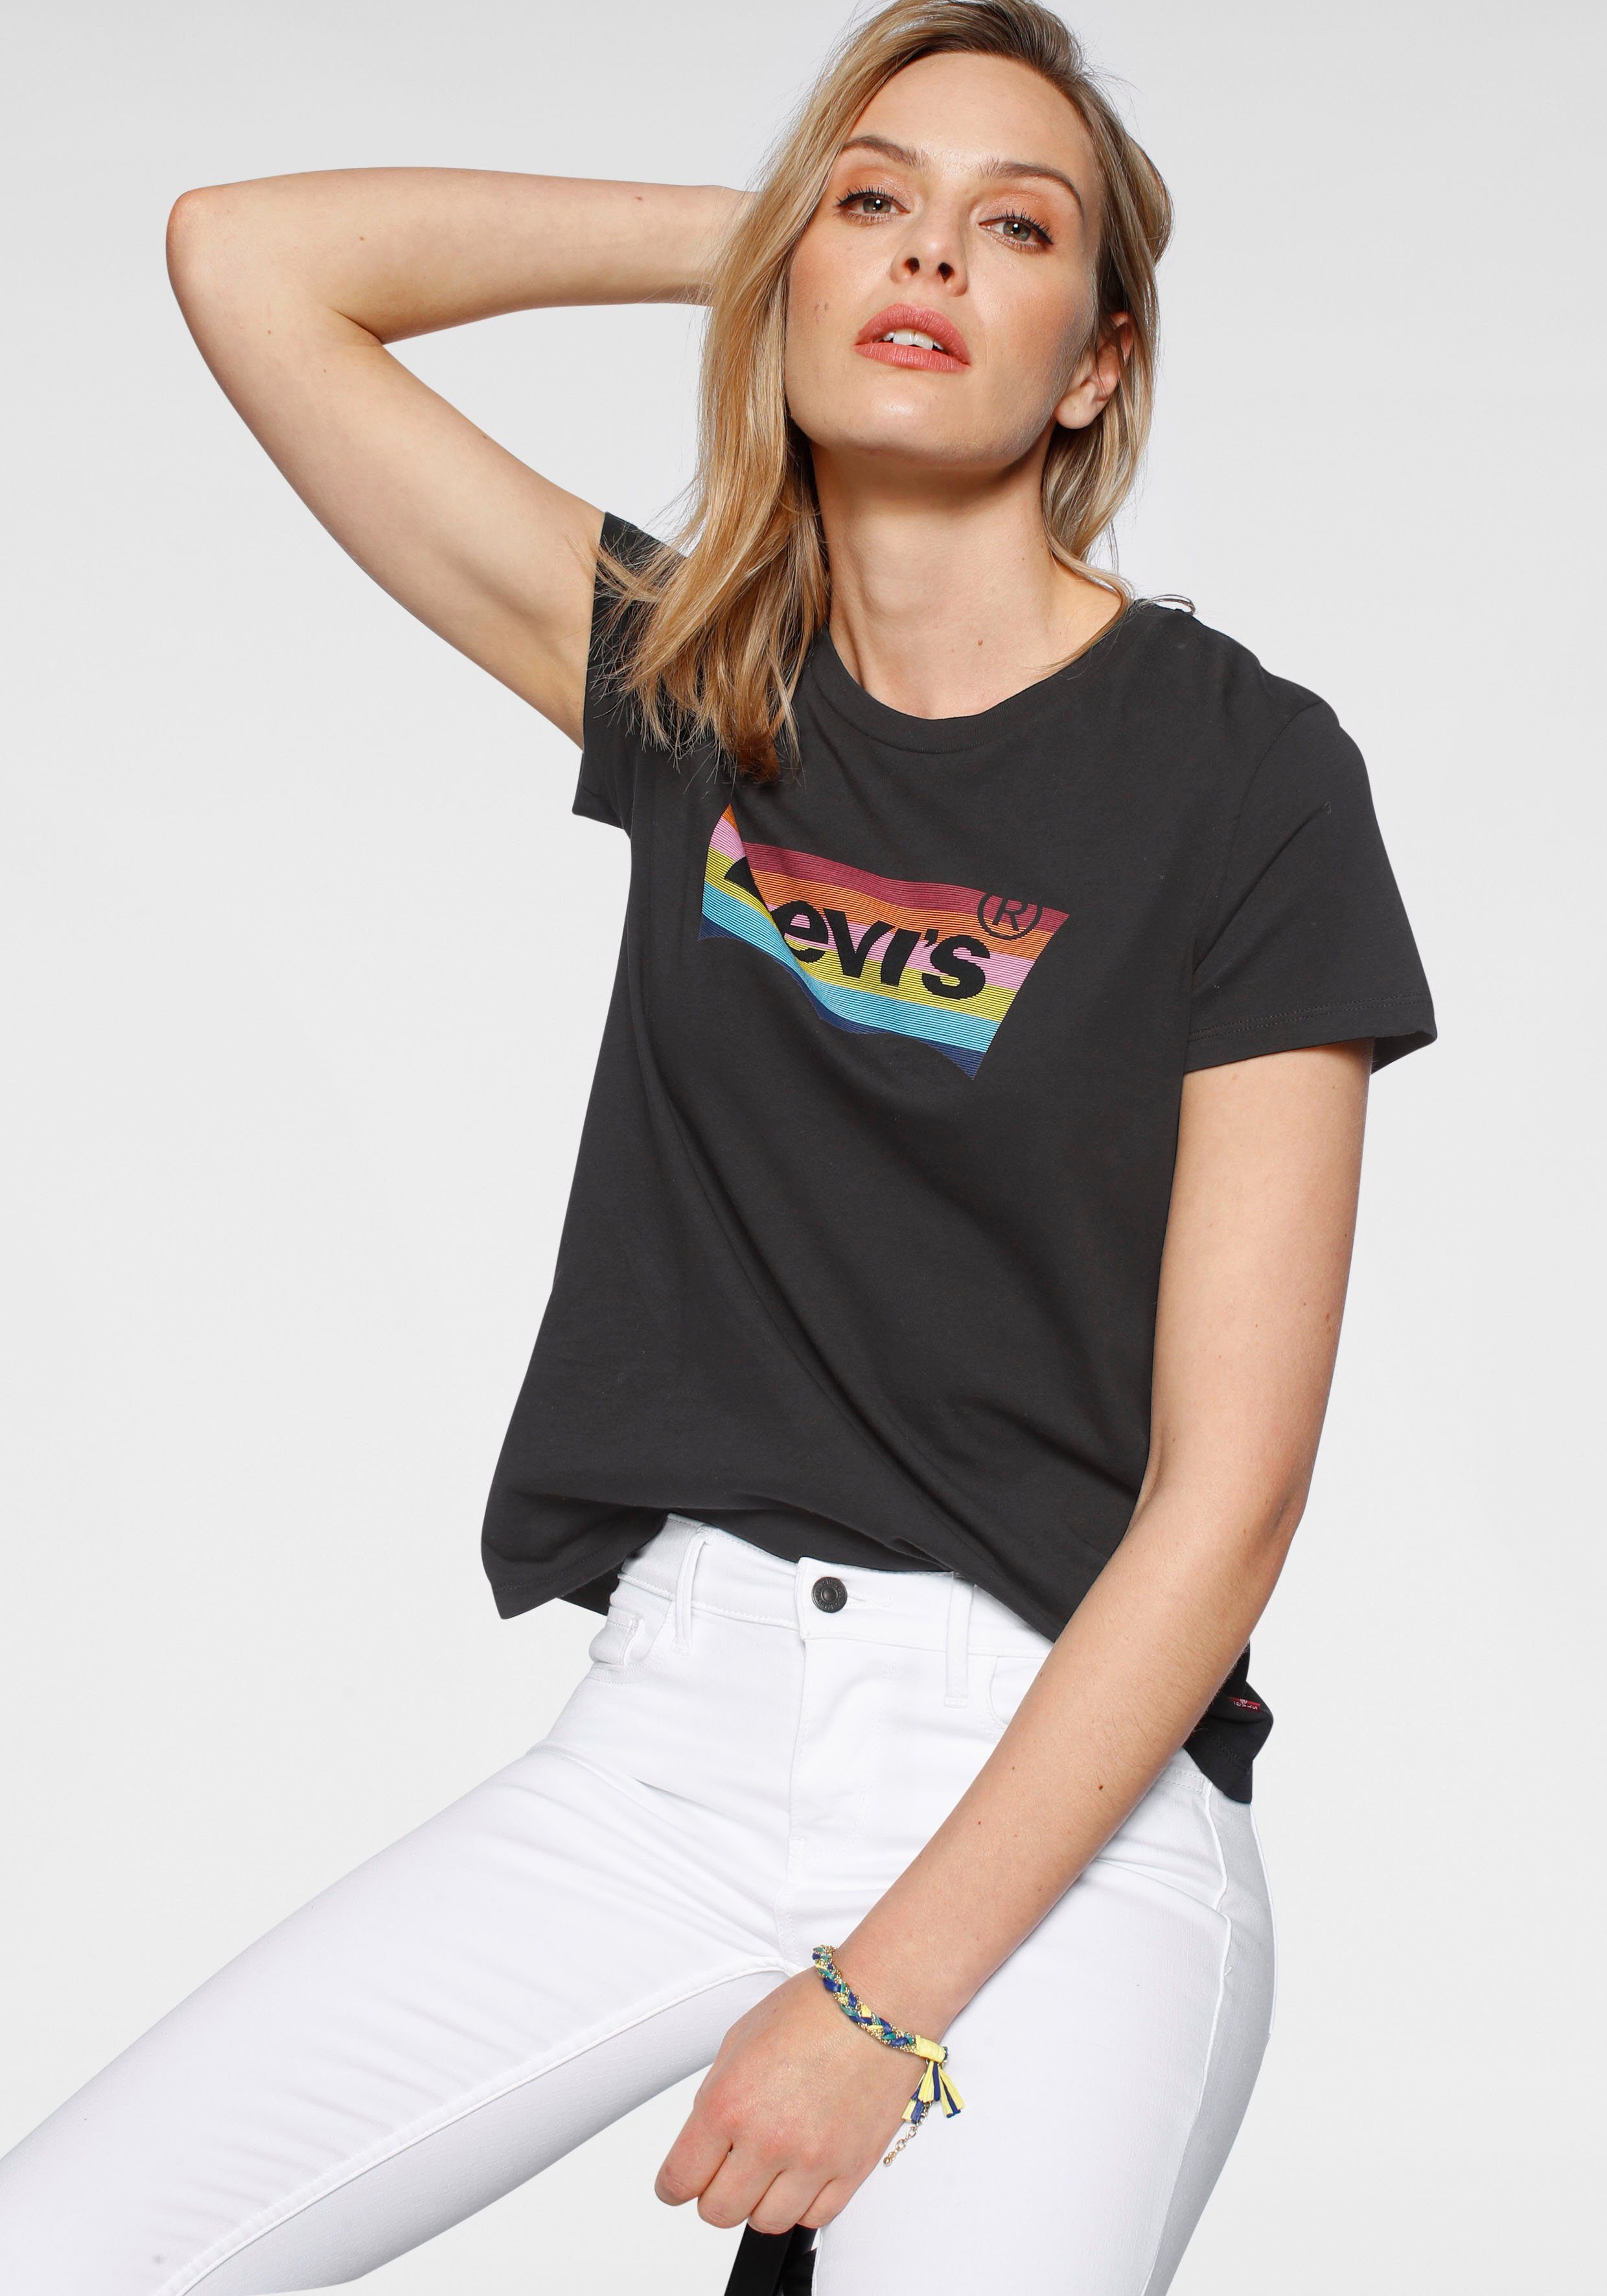 Levi's Shirts online kaufen | OTTO